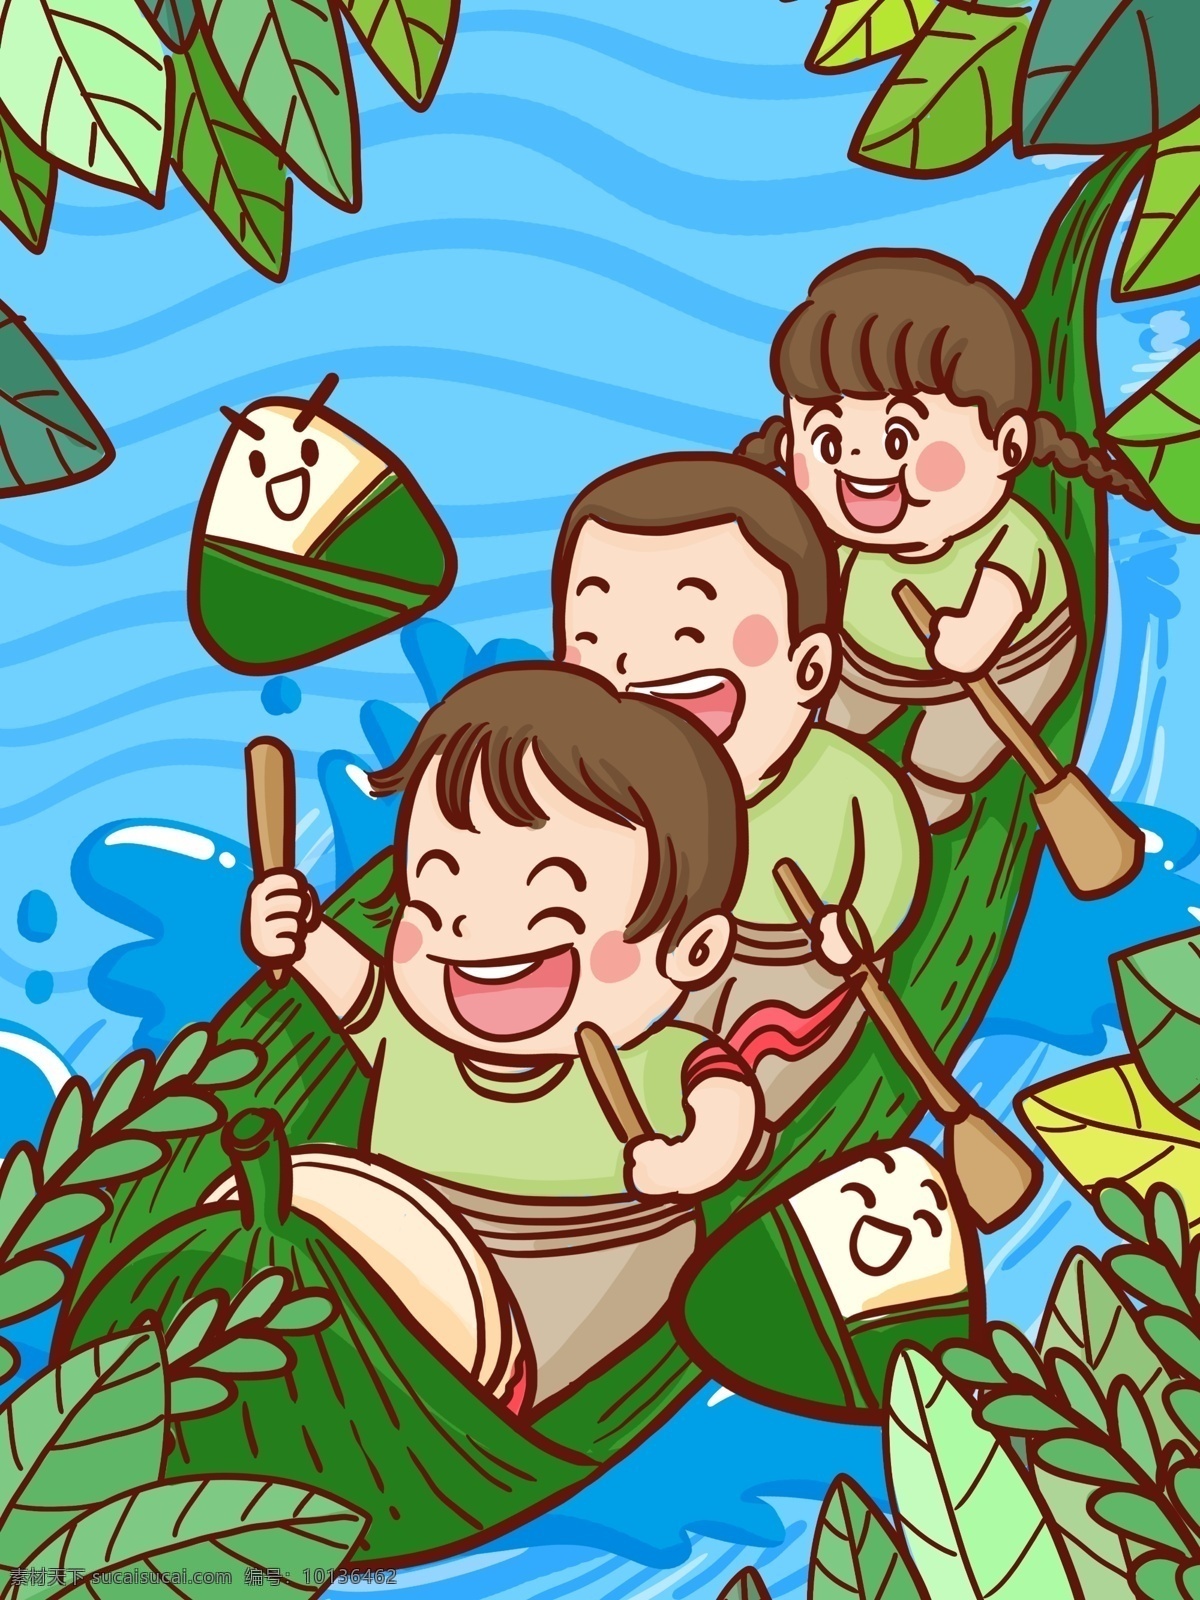 端午节 传统节日 三个 孩子 赛 龙舟 手绘 原创 插画 端午 传统 节日 赛龙舟 孩子们 三个孩子 划船 粽子 拟人 可爱 卡通